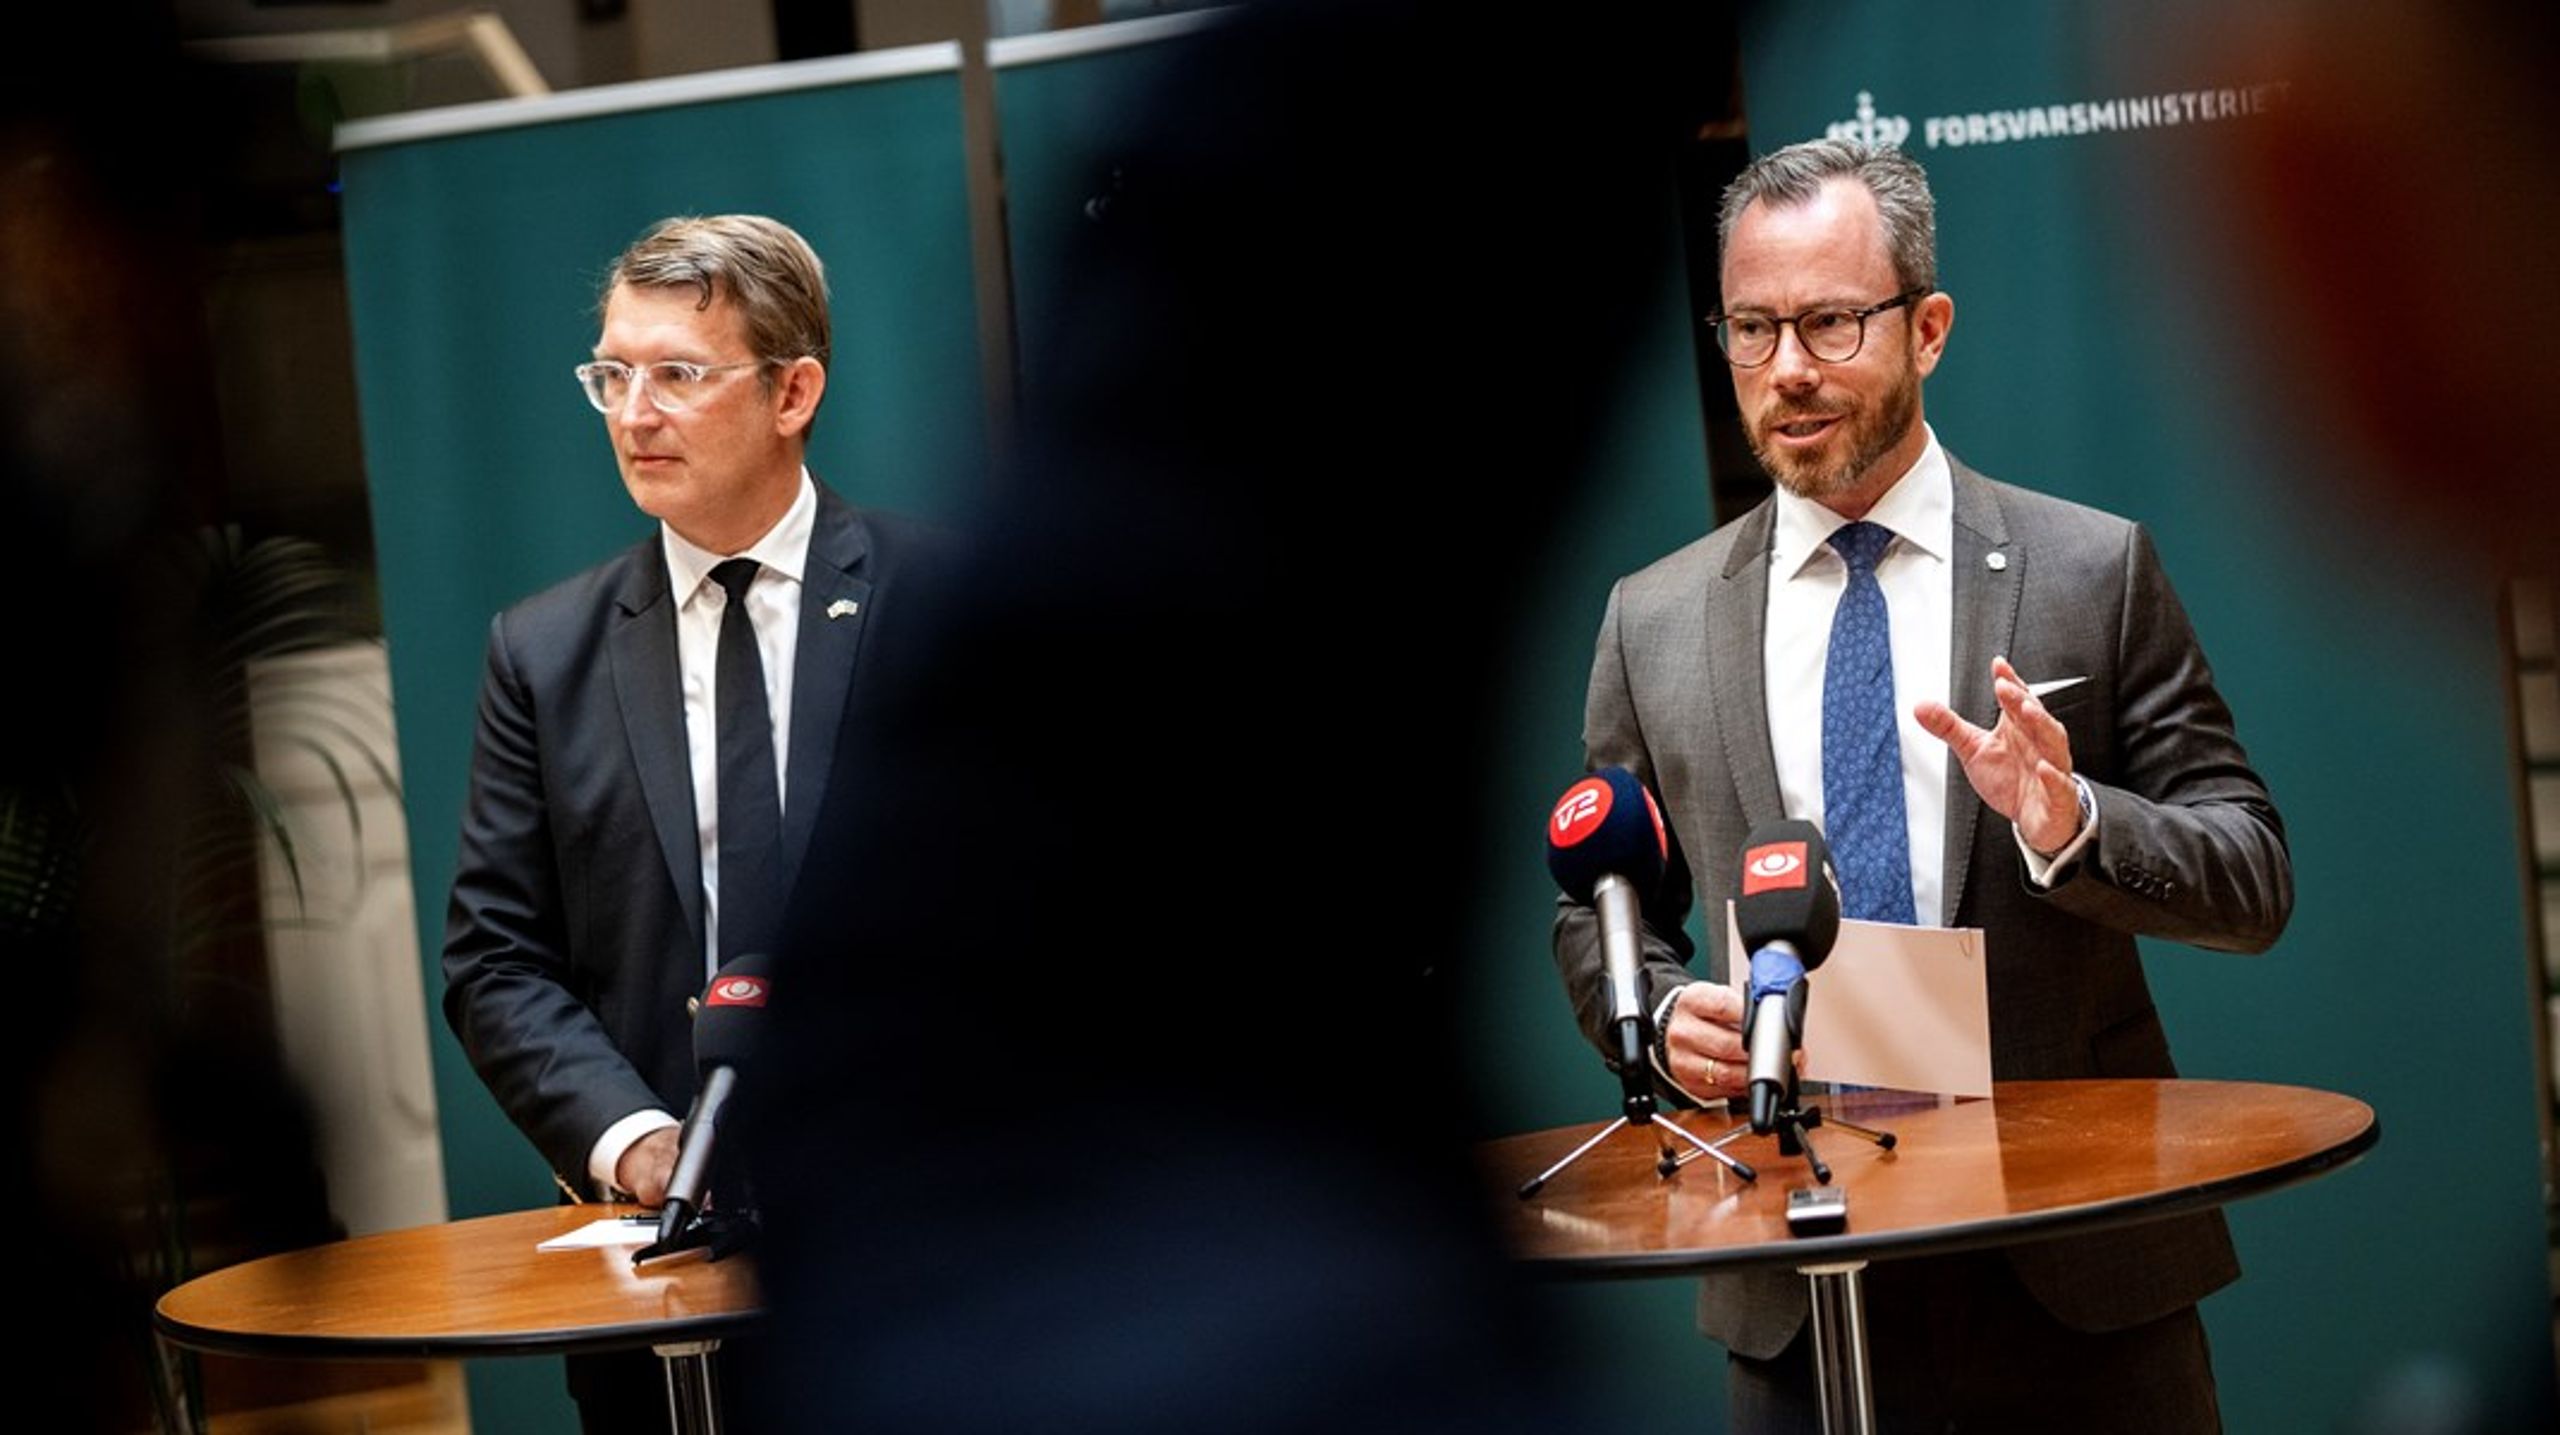 Forsvarsminister Troels Lund Poulsen har de seneste uger afholdt møder med en række partier om tilrettelæggelsen af en uafhængig undersøgelse af blandt andet Jakob Ellemann-Jensens rolle i våbensagen.